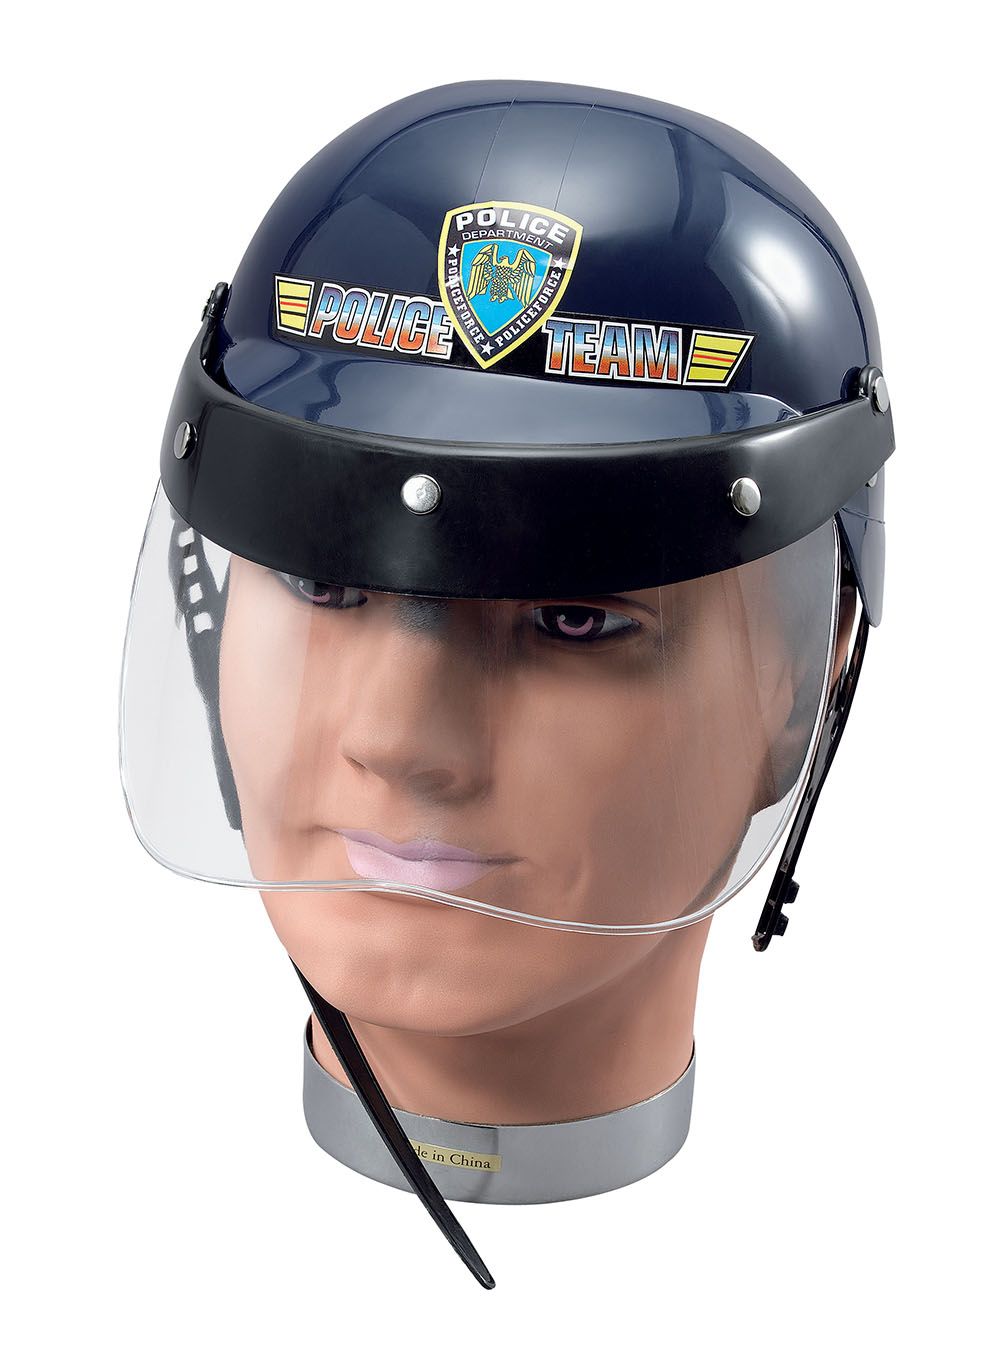 Police Helmet & Visor